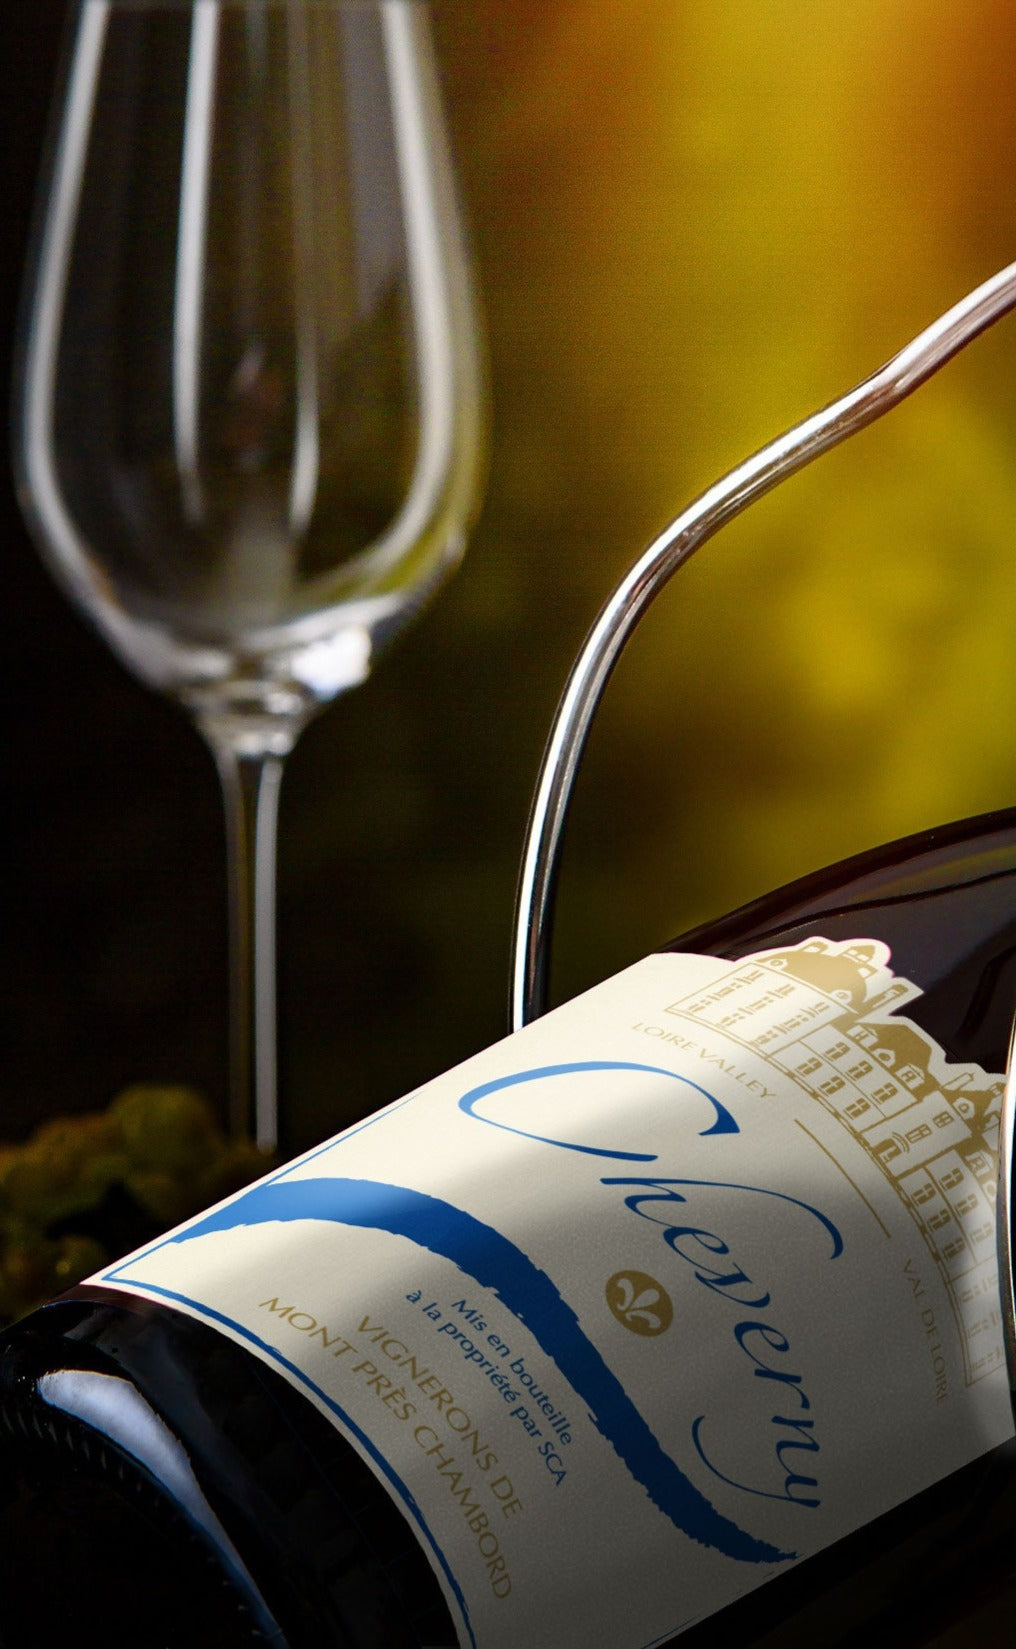 Bouteille de vin  AOC Cheverny Blanc classique - En vente sur la boutique en ligne de la Cave Coopérative des Vignerons de Mont-Pres-Chambord